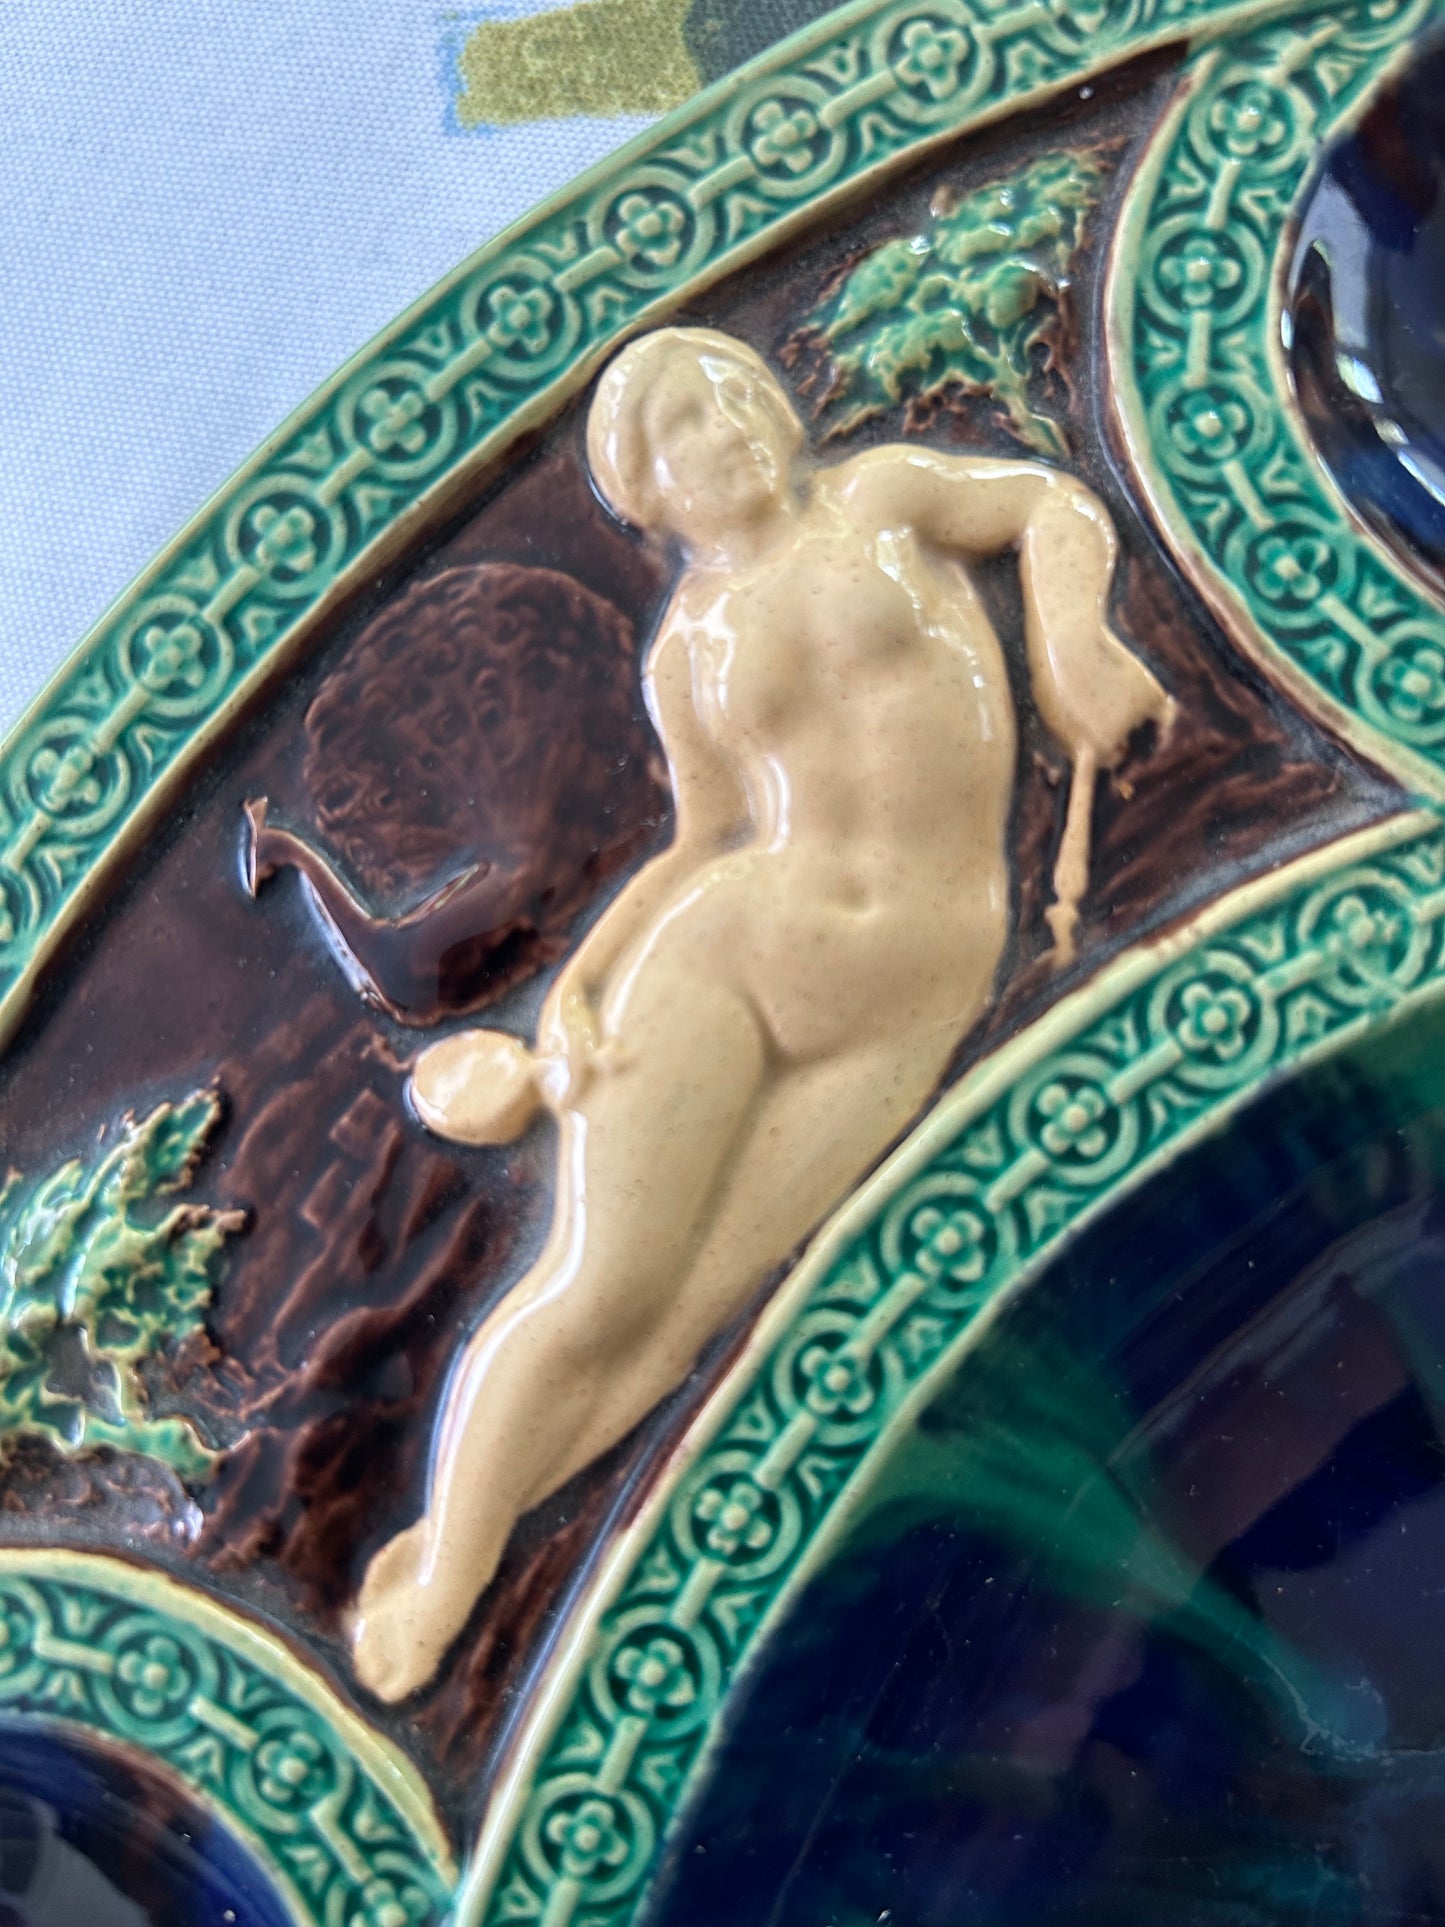 Antique Minton Majolica Renaissance Platter c.1865, 14 3/8 x 12 1/4” - Pristine No